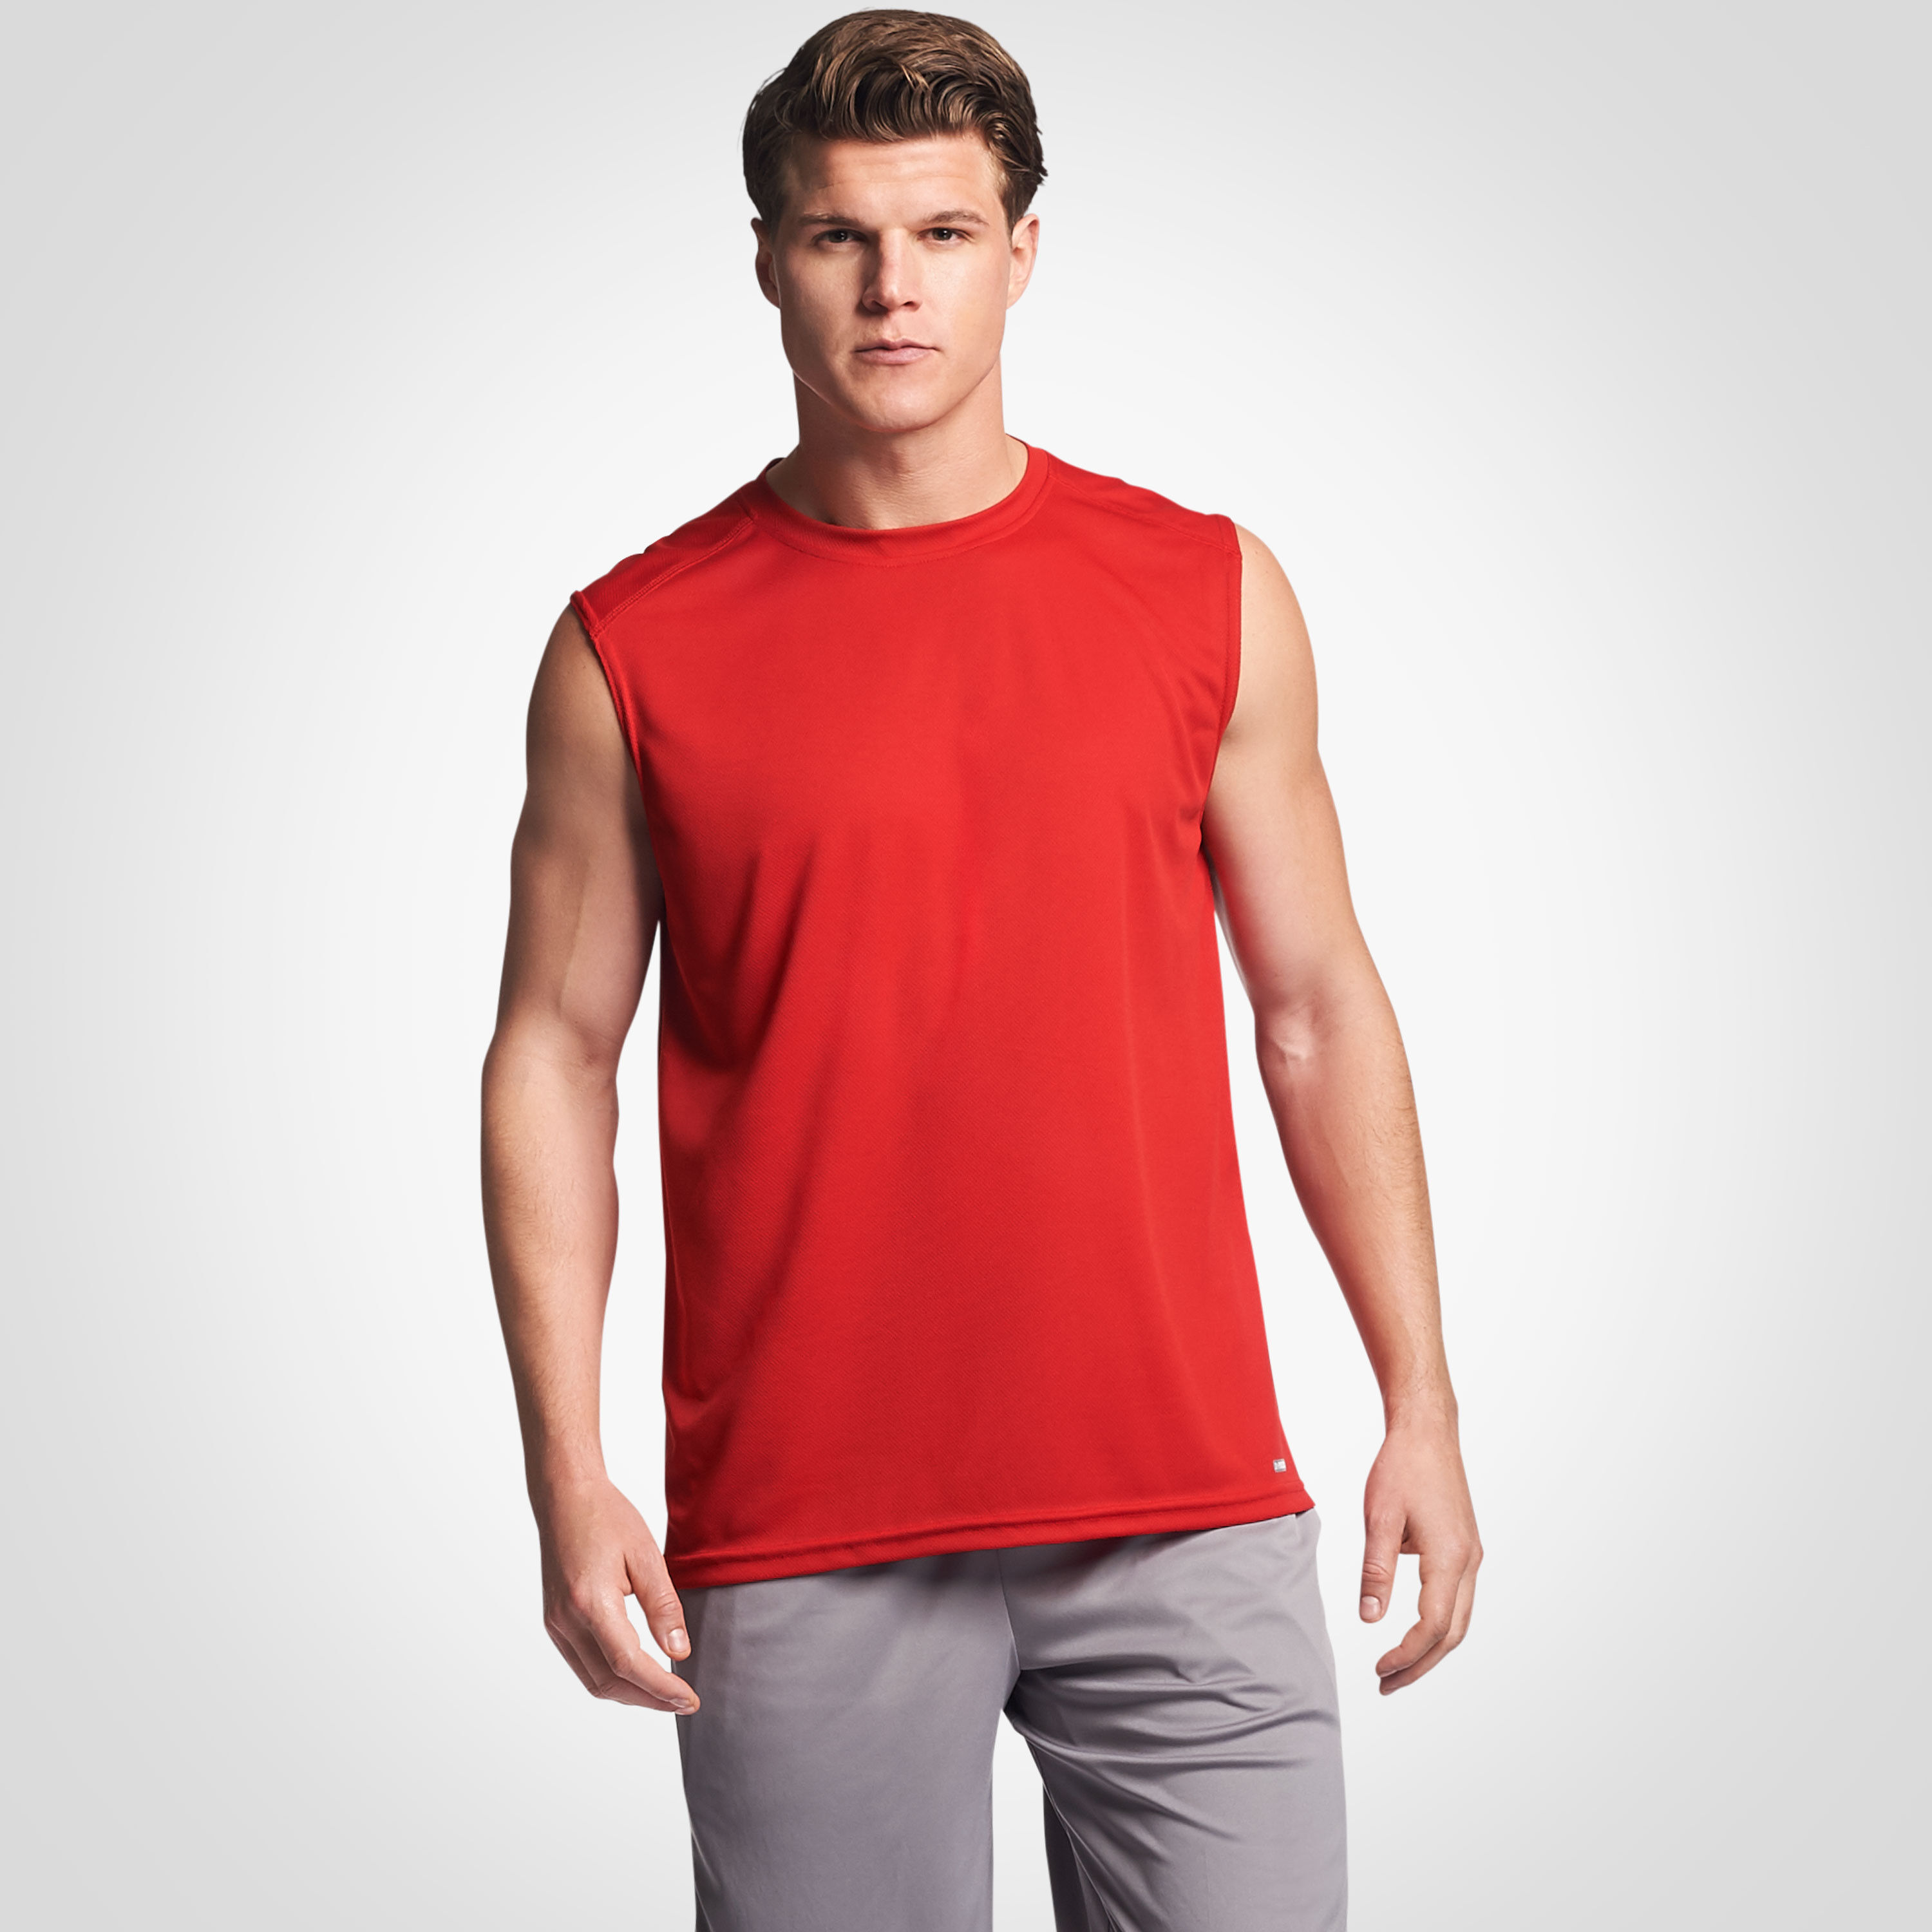 sleeveless athletic shirt